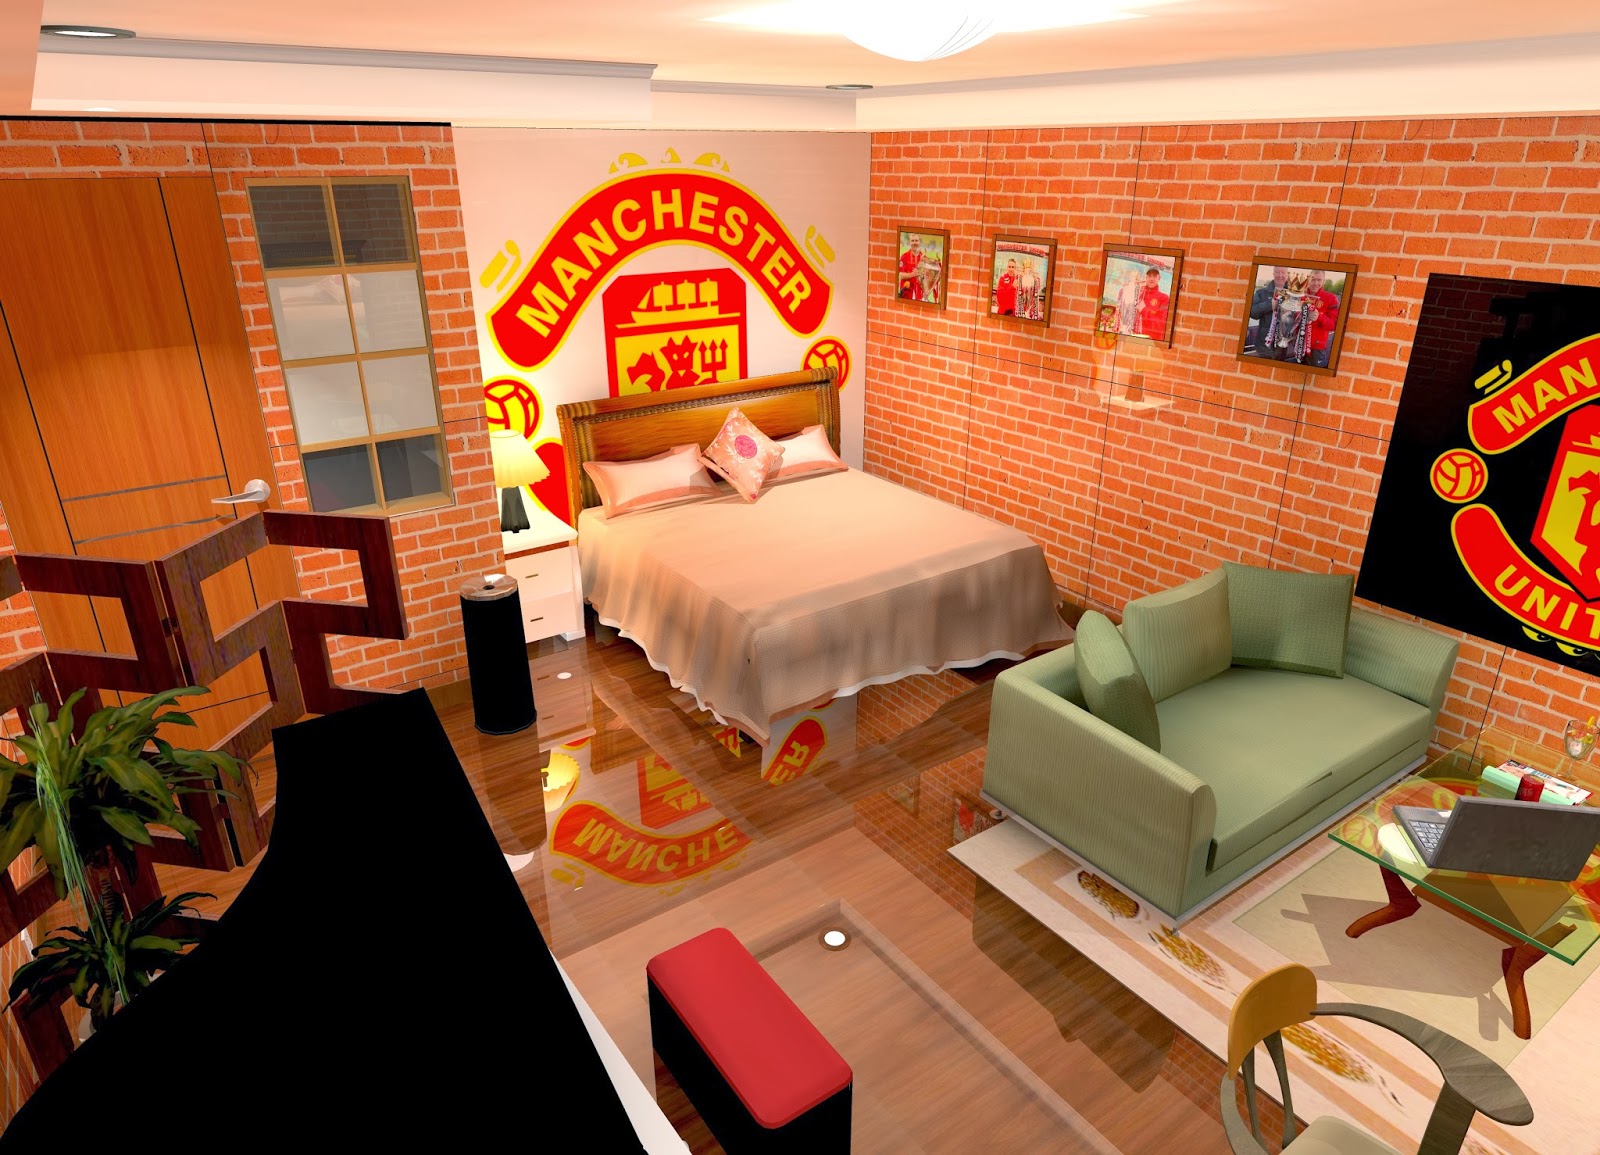  Desain  Kamar  Tidur Manchester United Kumpulan Desain  Rumah